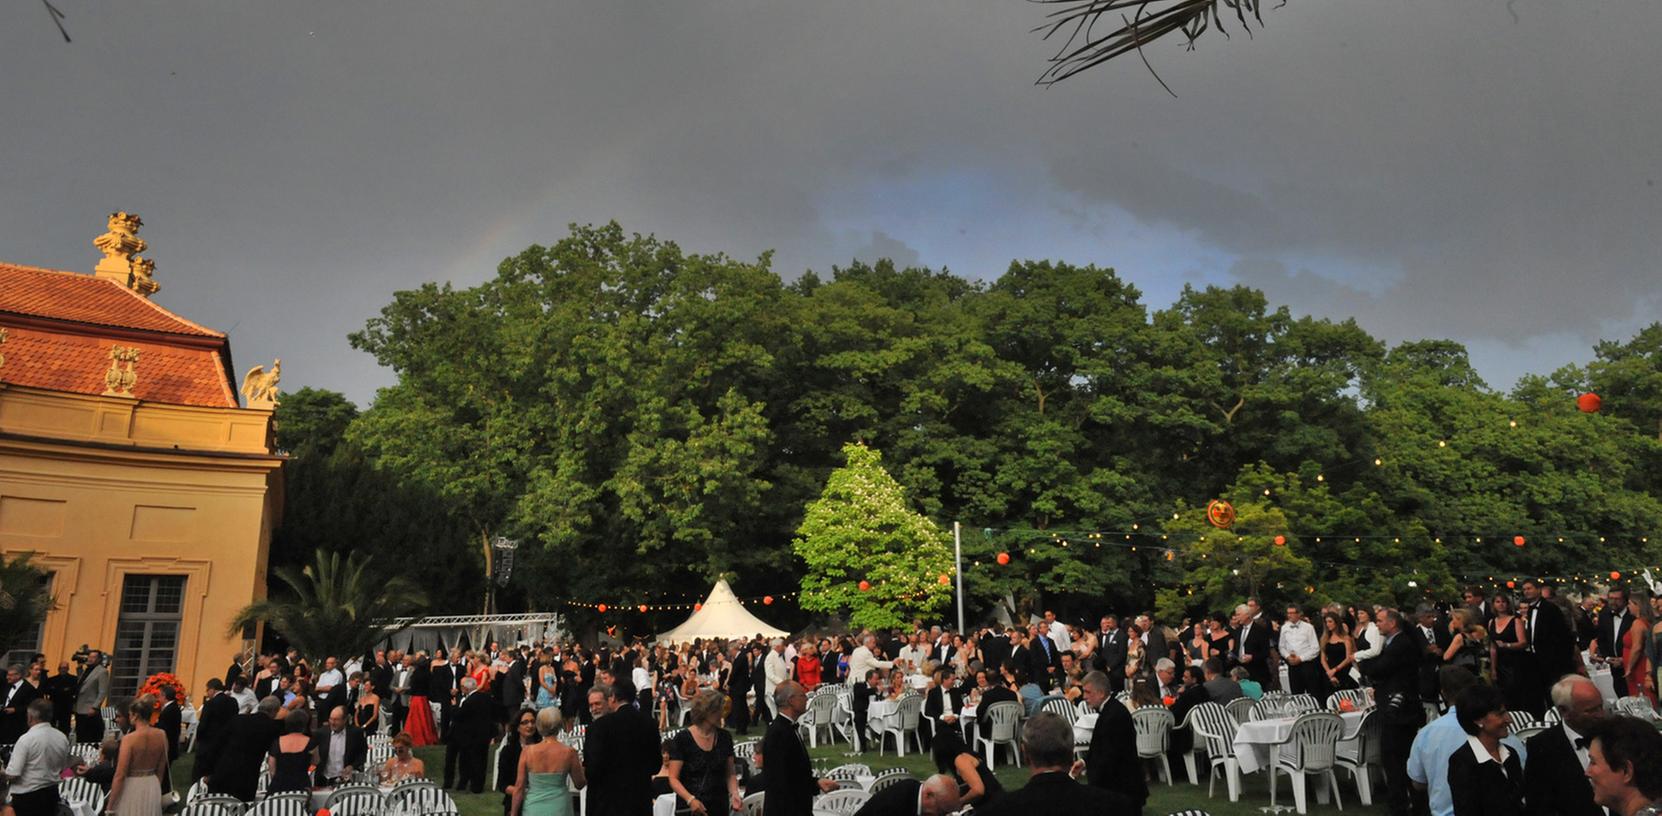 Schwarze Wolken brauten sich am Abend über dem Schlossgarten zusammen.